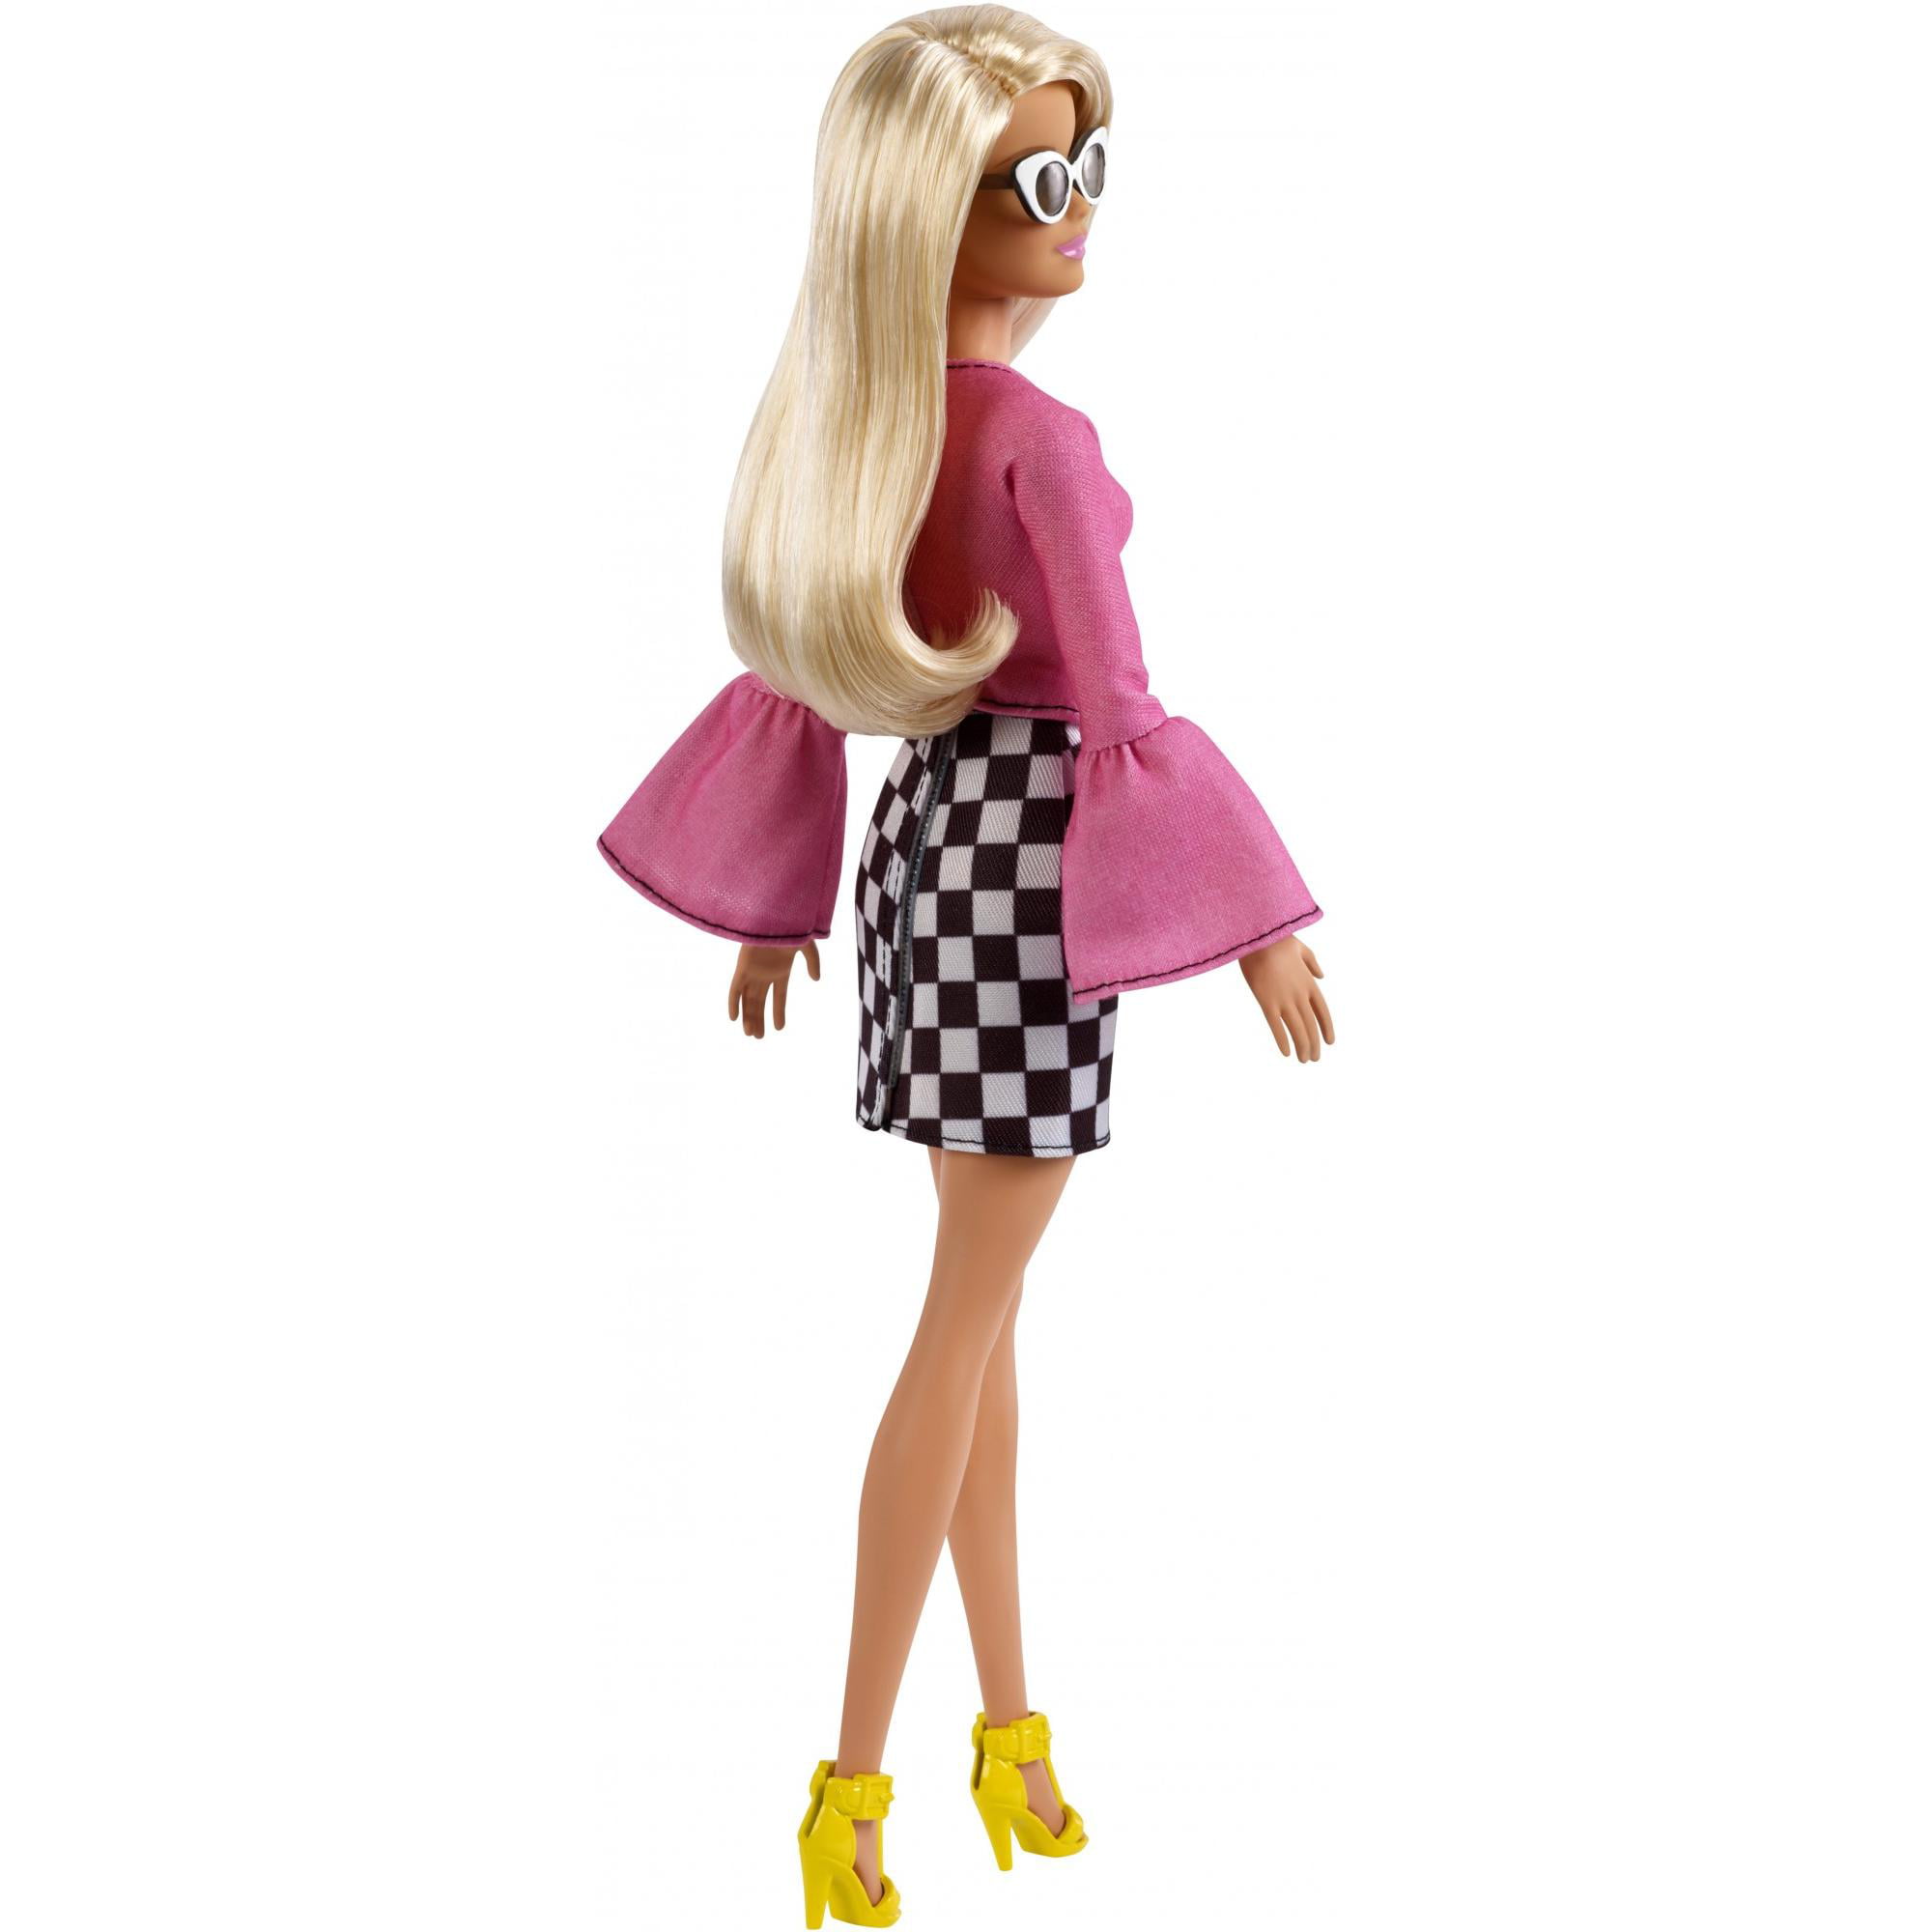 Barbie Fashionistas Doll, Original Body Type Checkered Skirt - Walmart.com